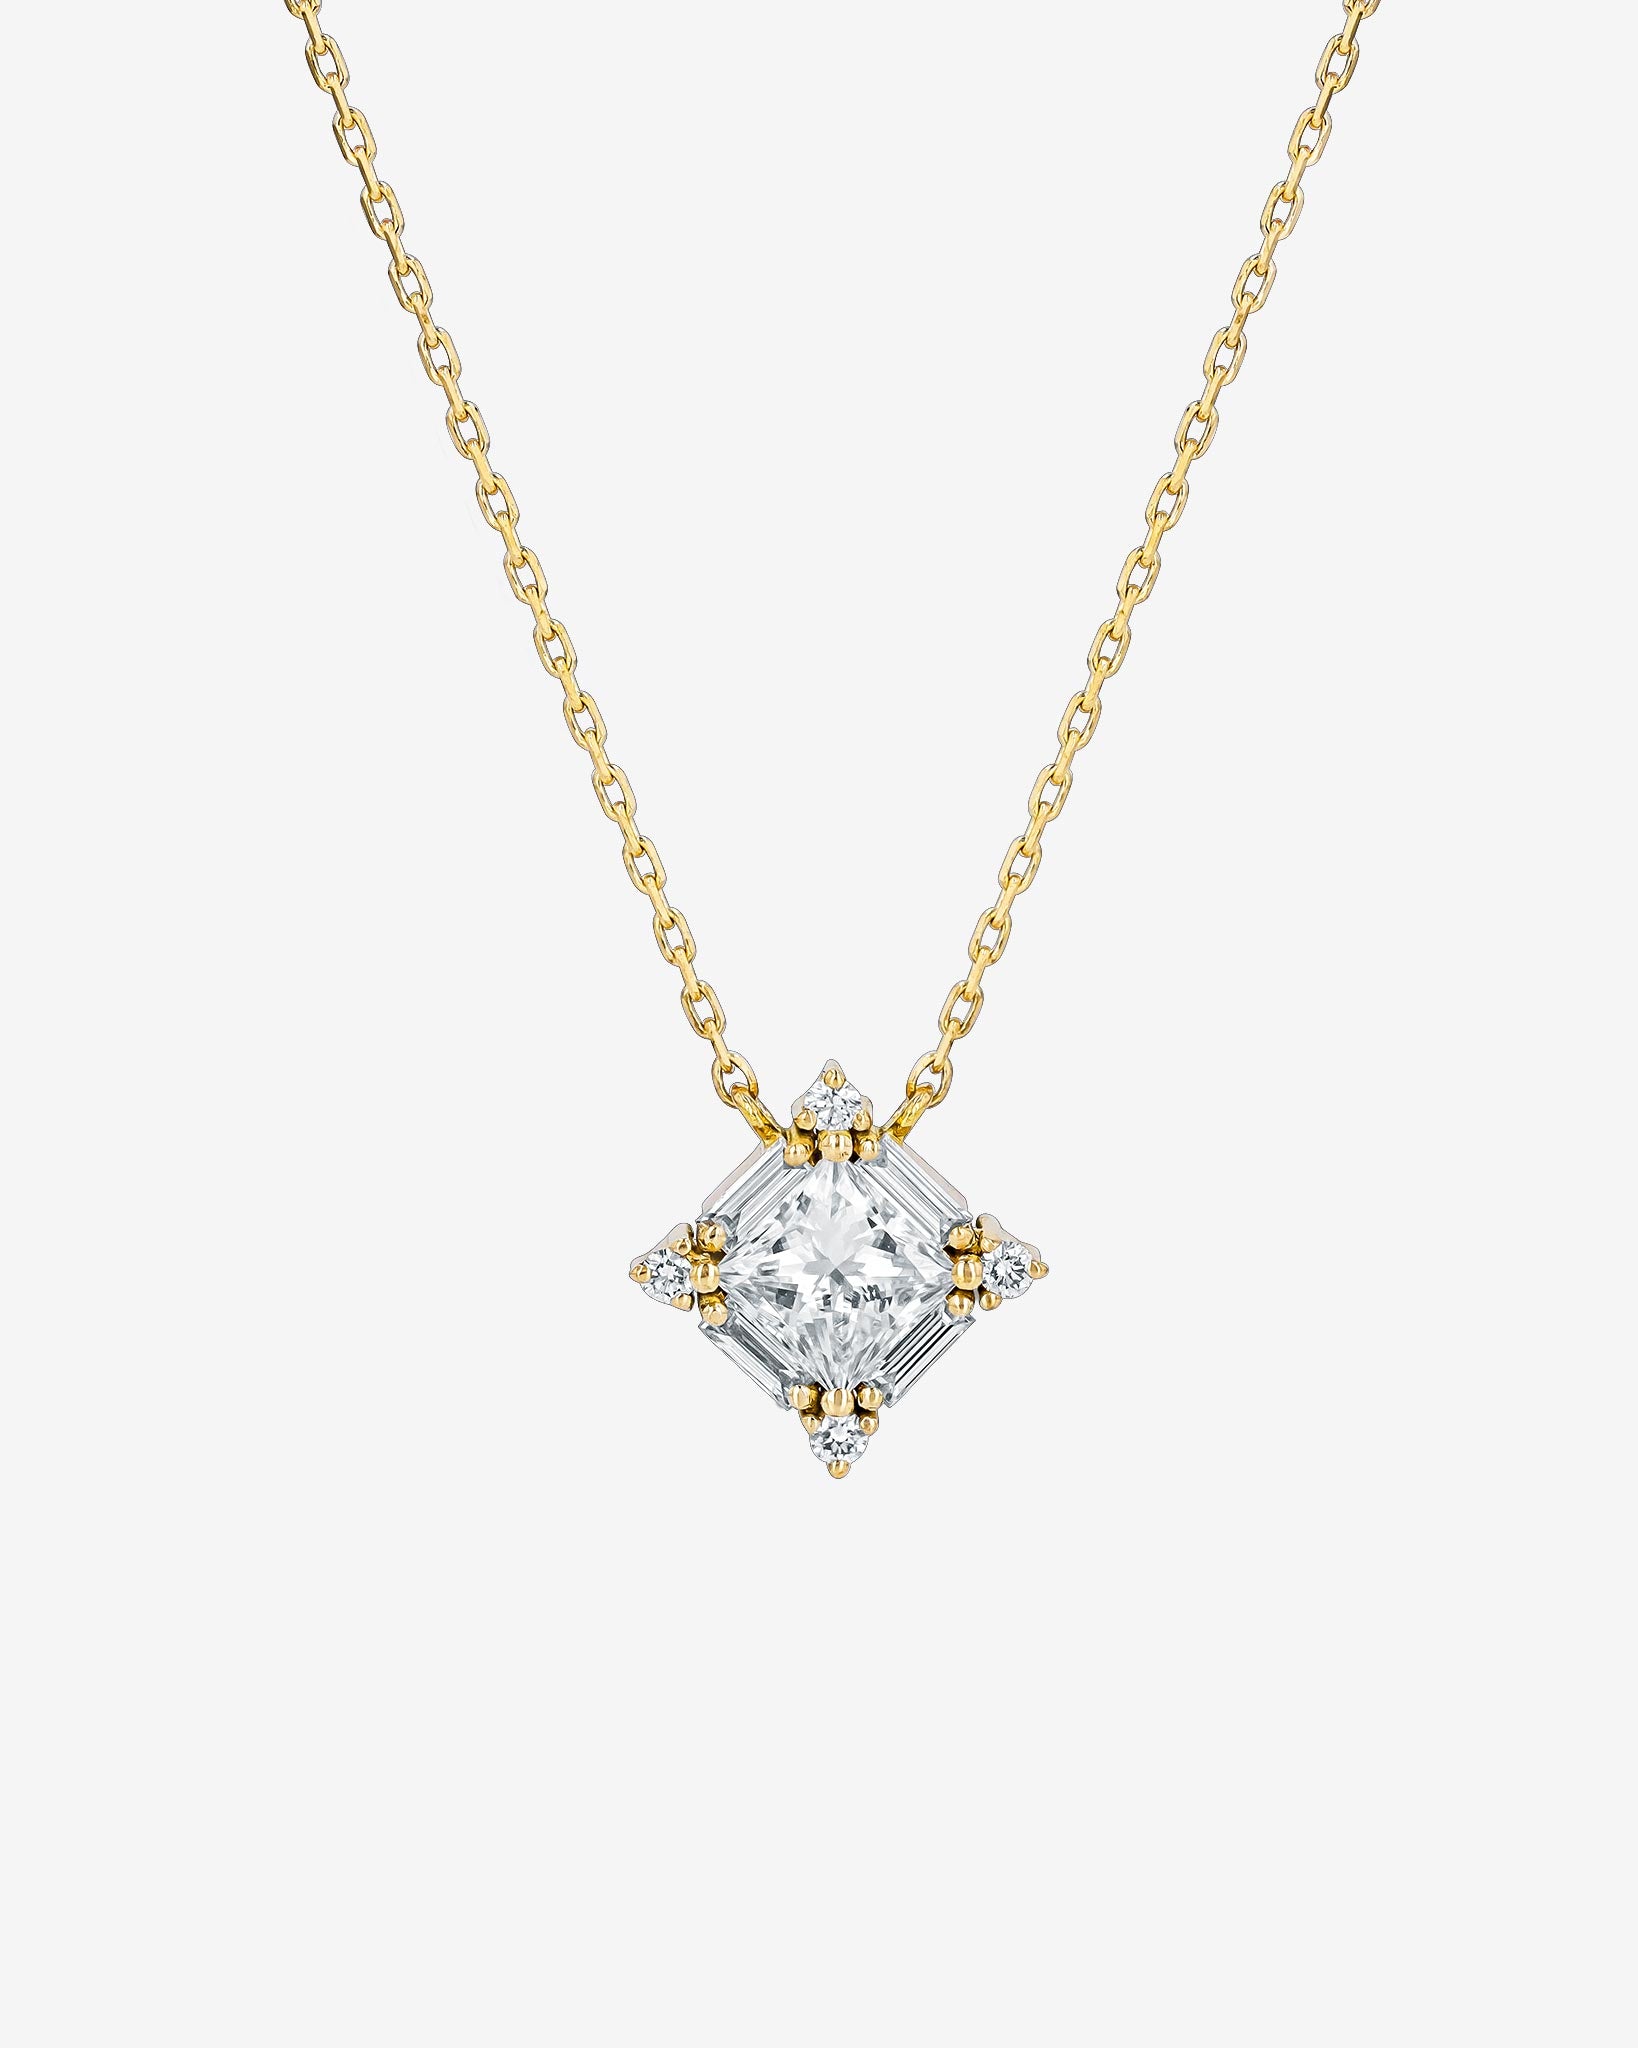 1.01 Carat Fancy Color Princess-Cut Diamond Pendant Necklace